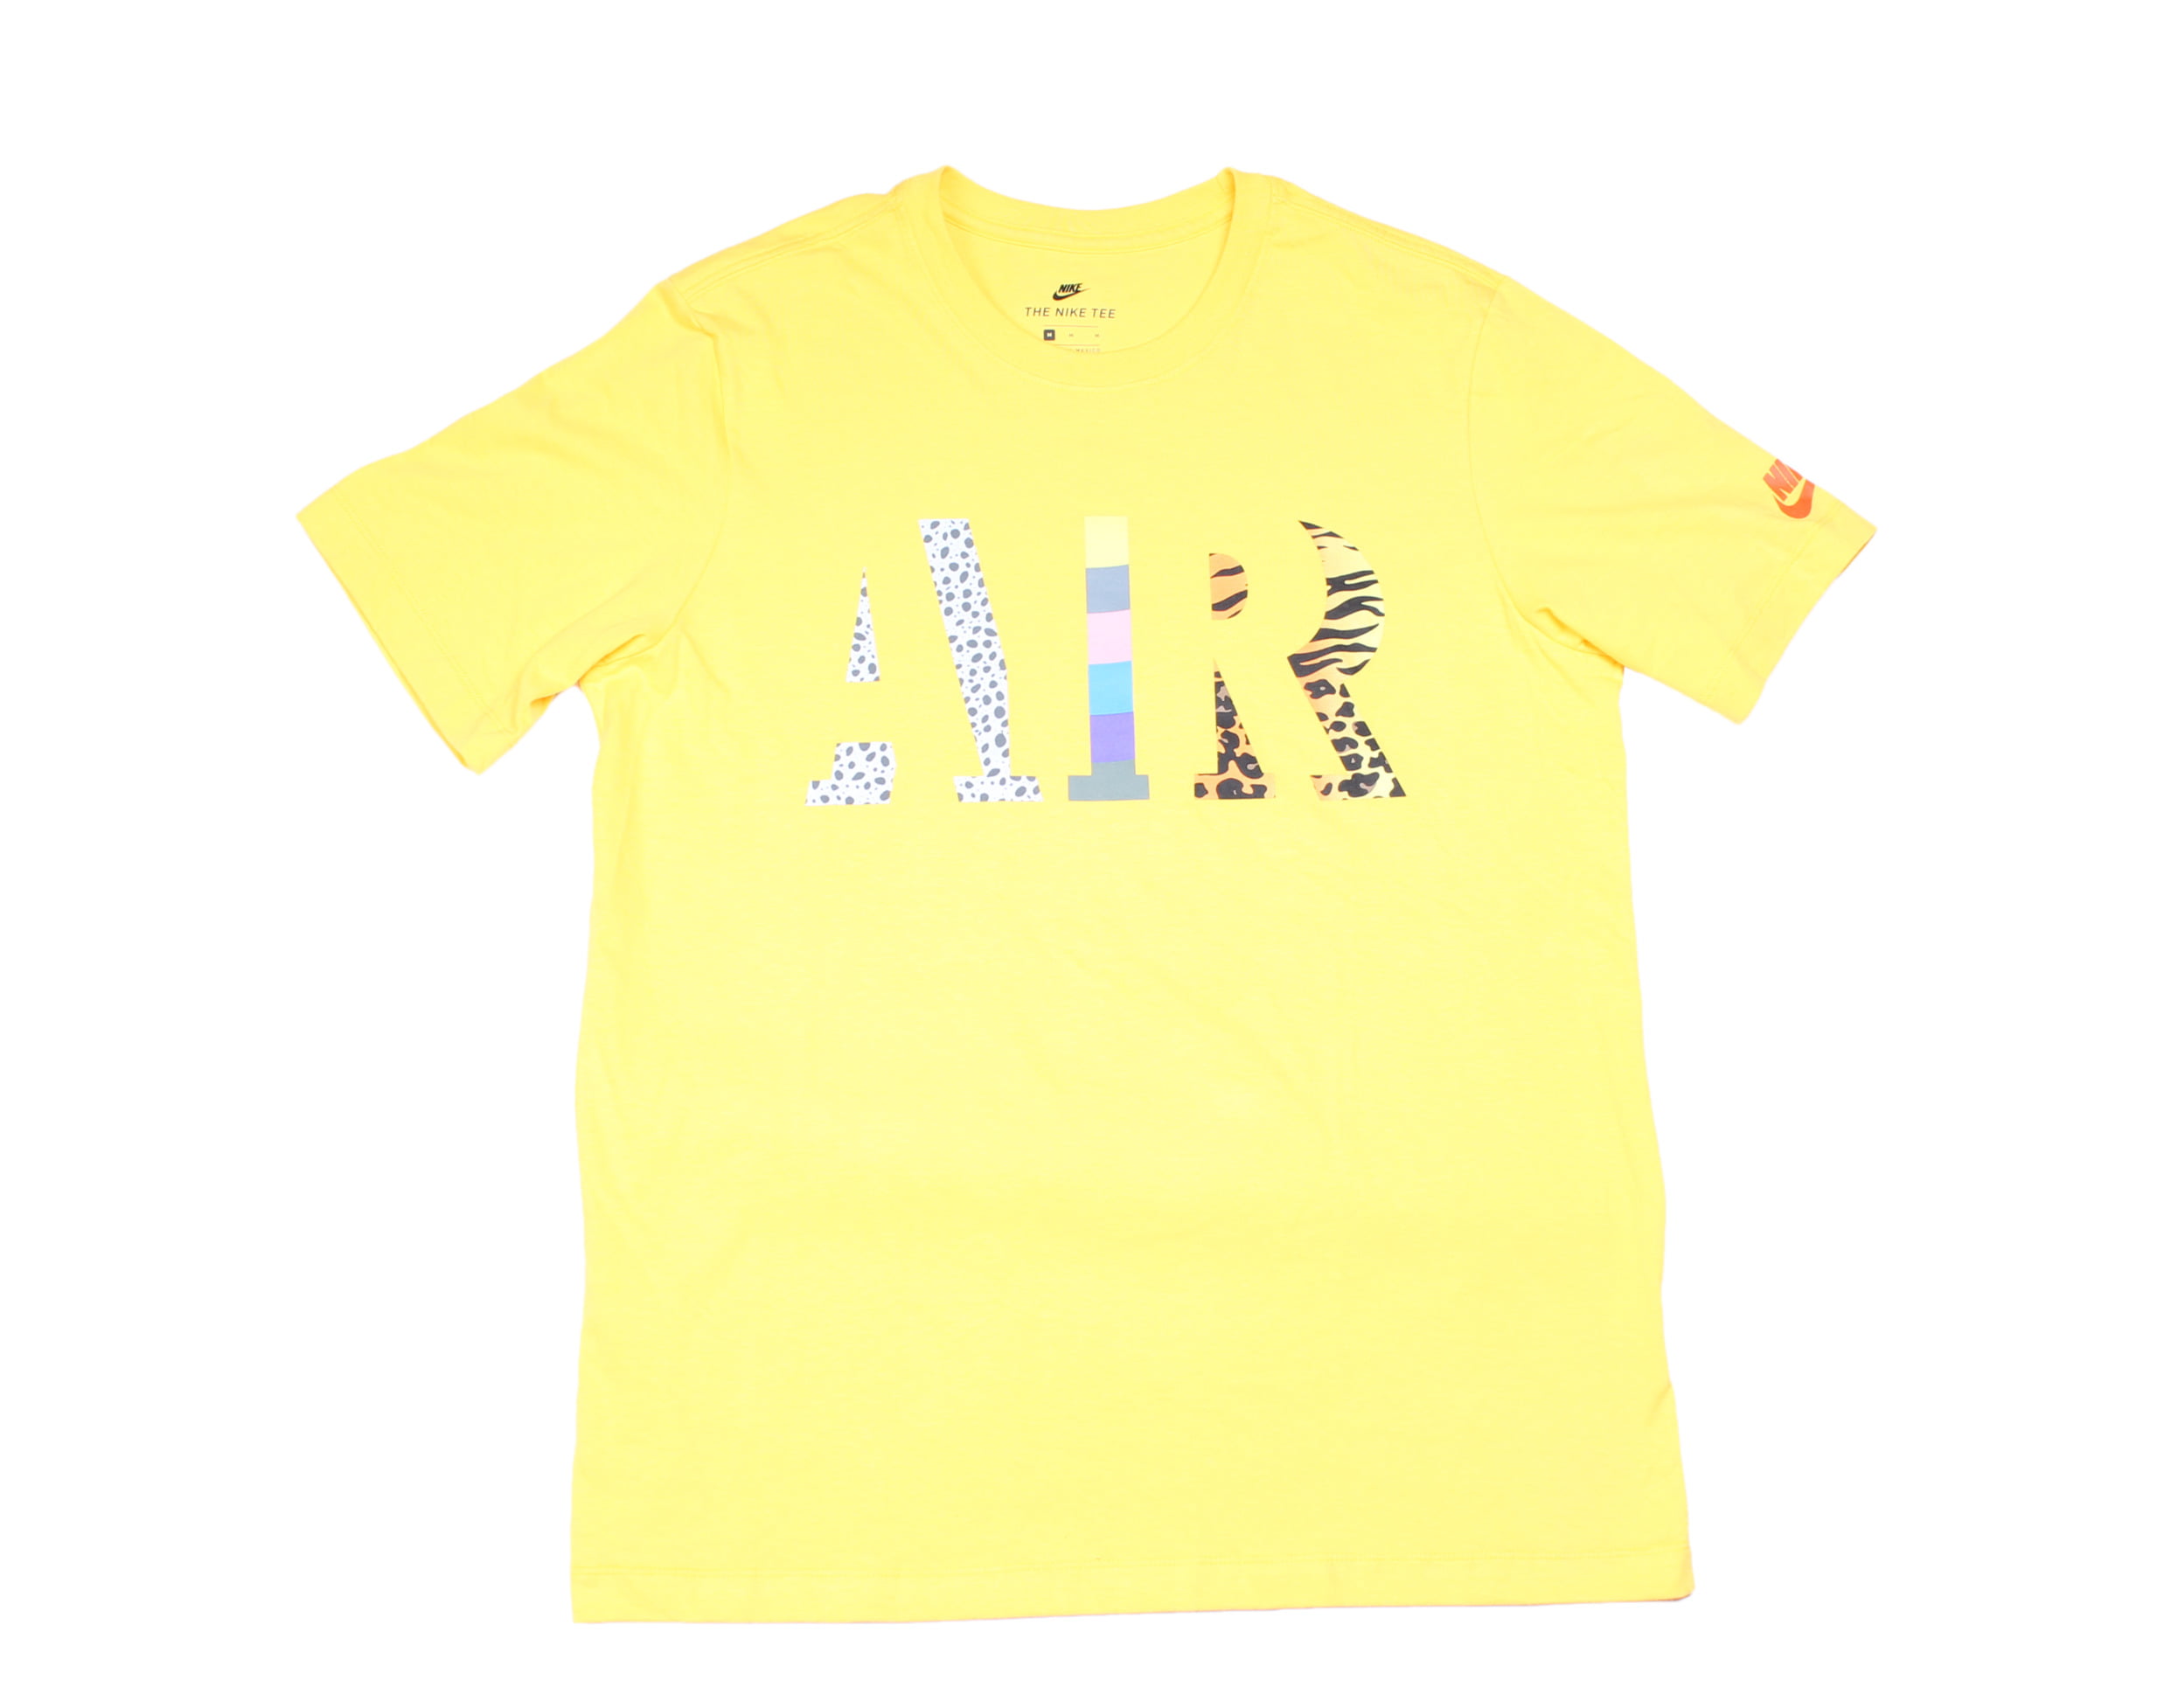 yellow air max shirt